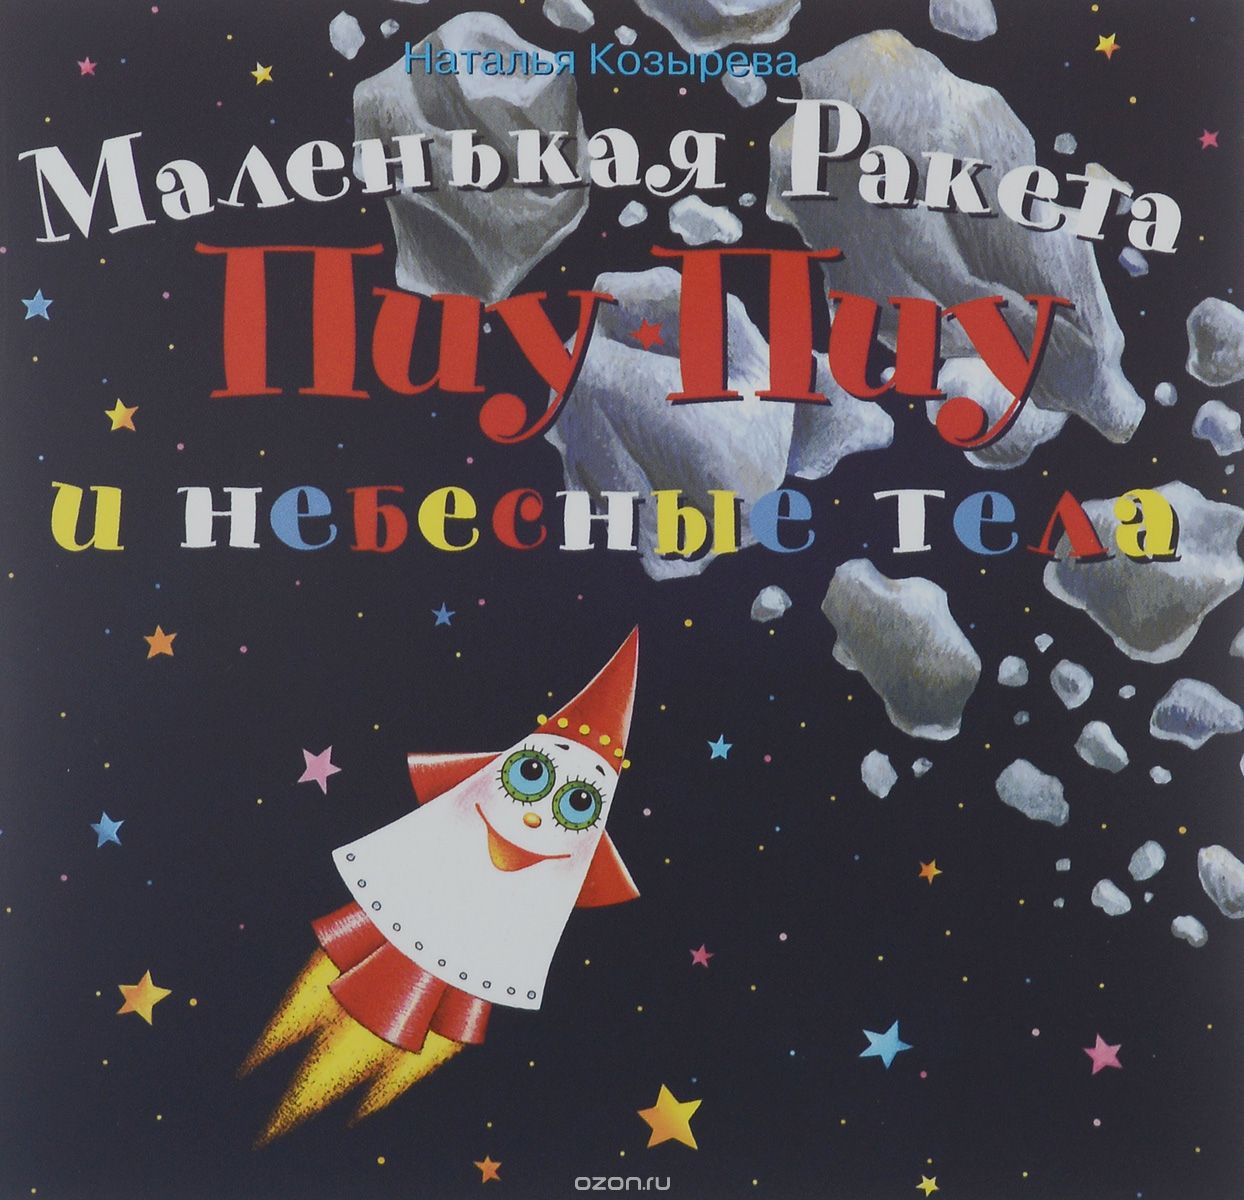 Маленькая ракета Пиу-Пиу и небесные тела (+ наклейки), Наталья Козырева